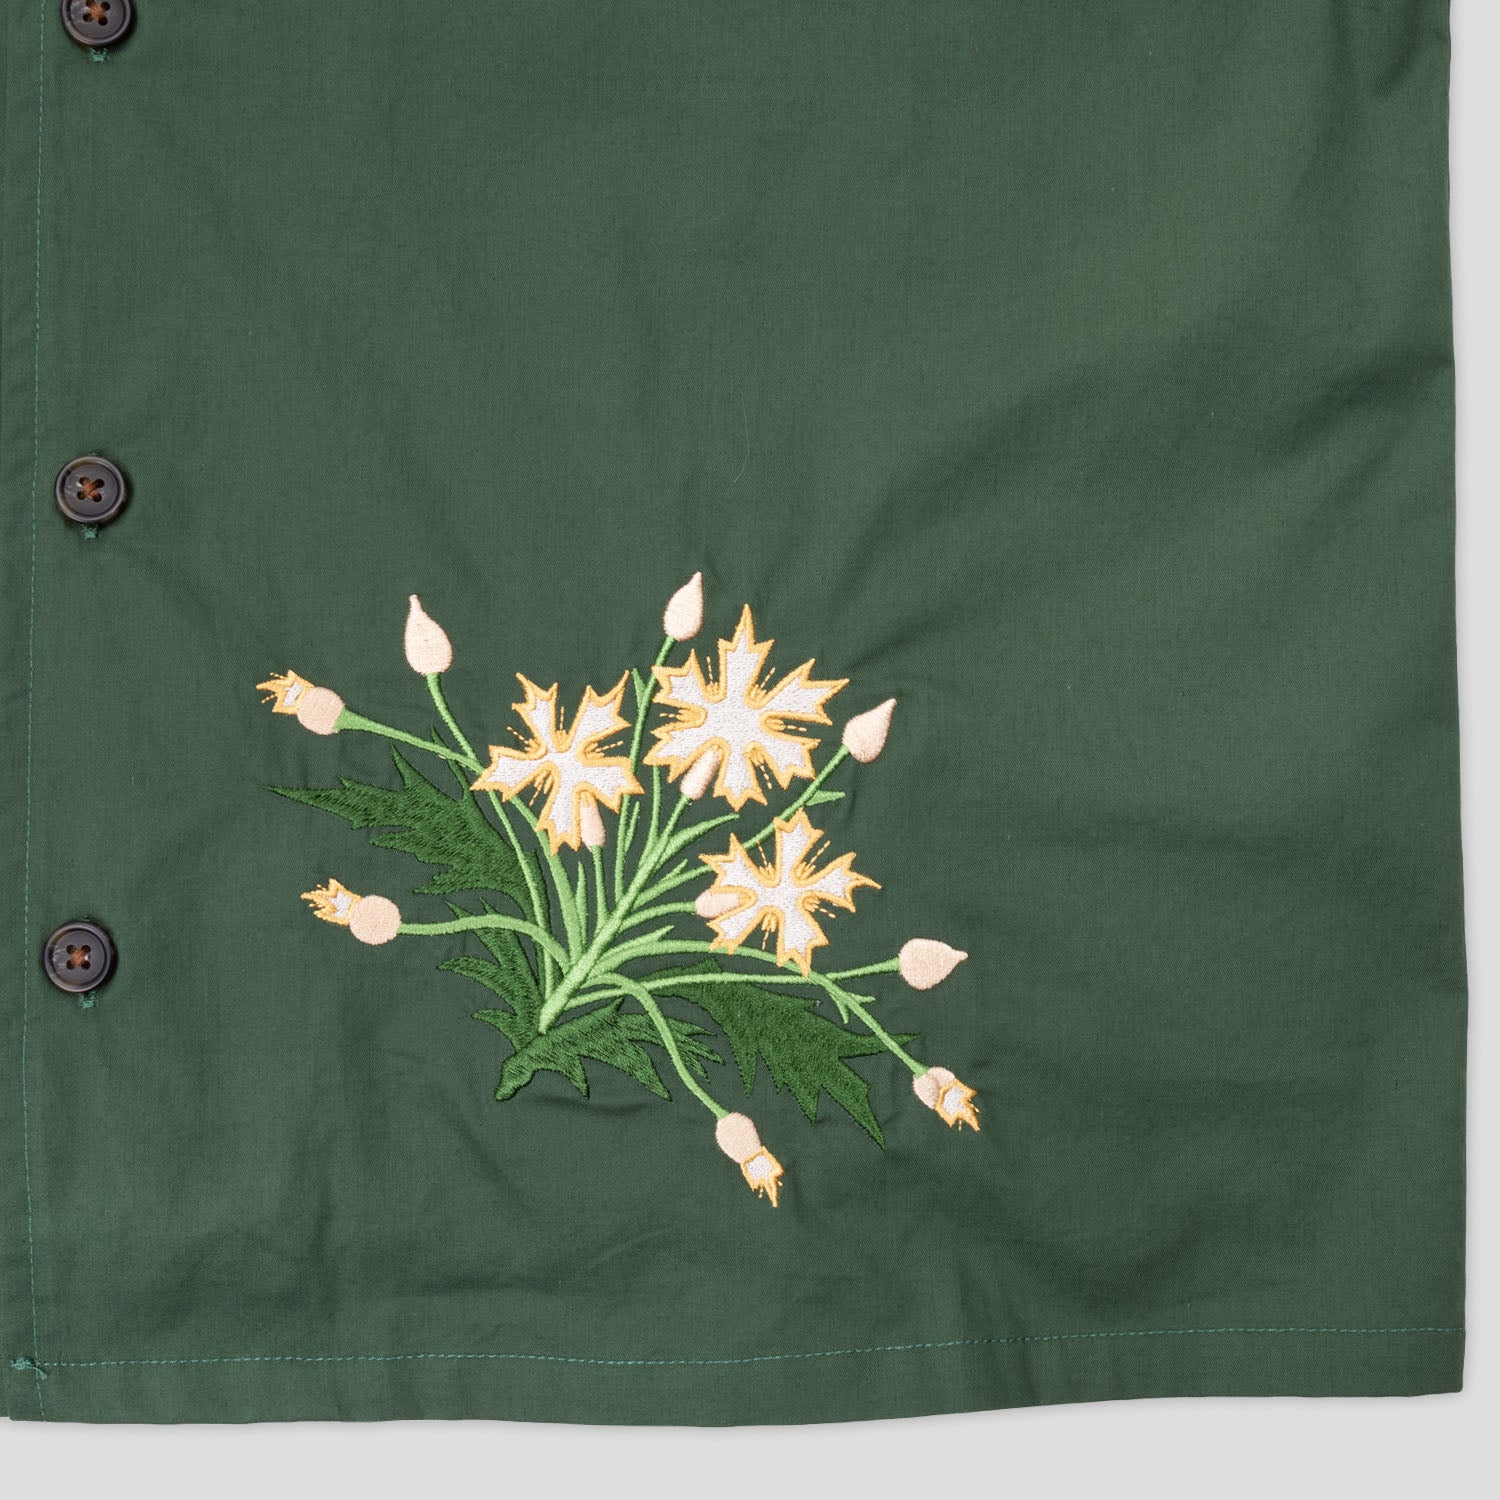 Pass~Port Bloom Shirt - Forest Green